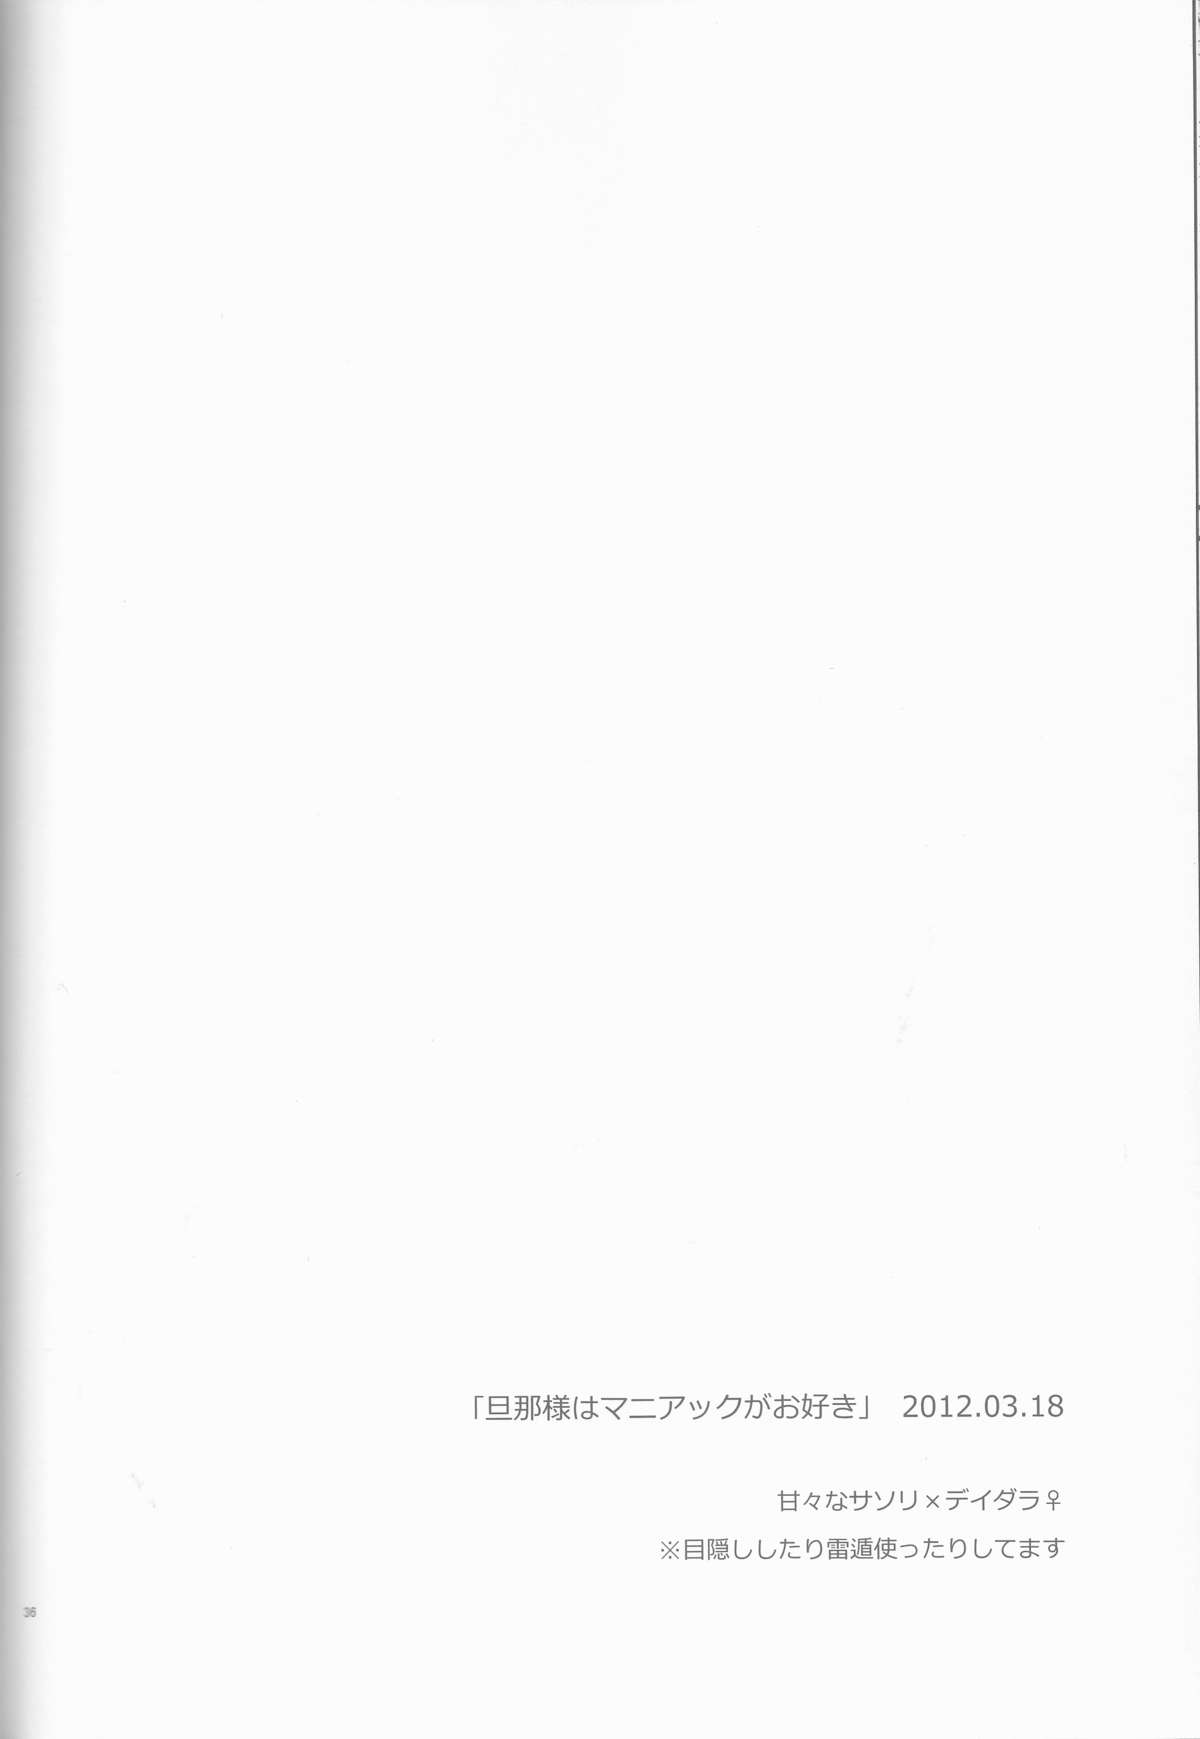 (全忍集結2) [一晩仔猫 (七夏ねむ)] サソデイ♀再録本 (NARUTO -ナルト-)